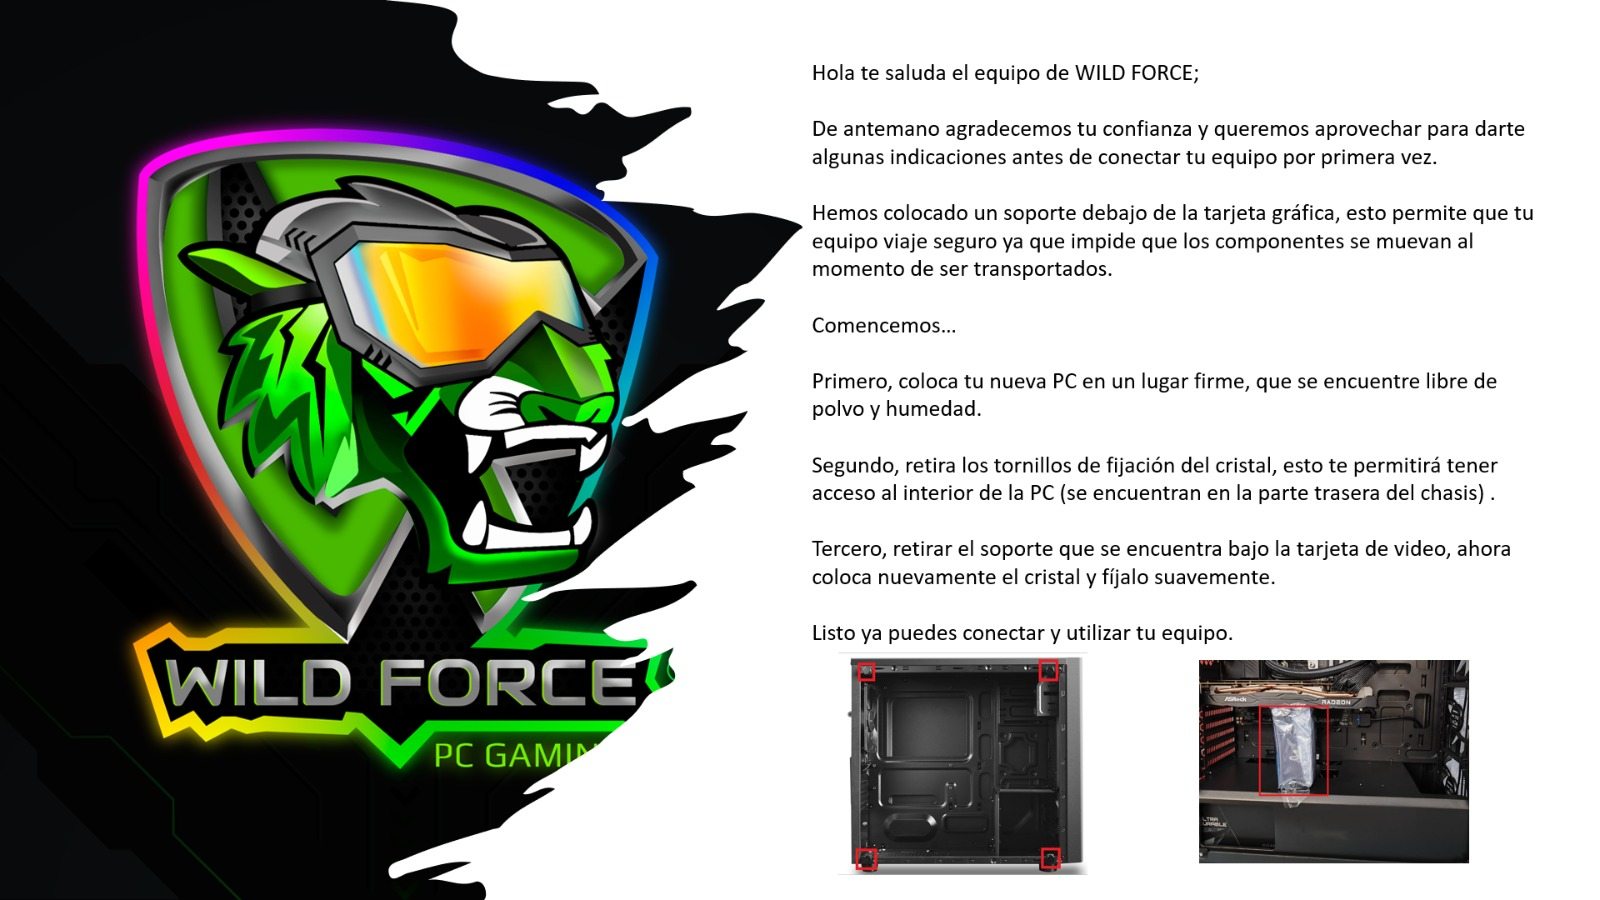 PC Gamer Wild Force ELITE AMD Ryzen 5 240GB SSD + 1TB HDD 16GB Ram Windows 10